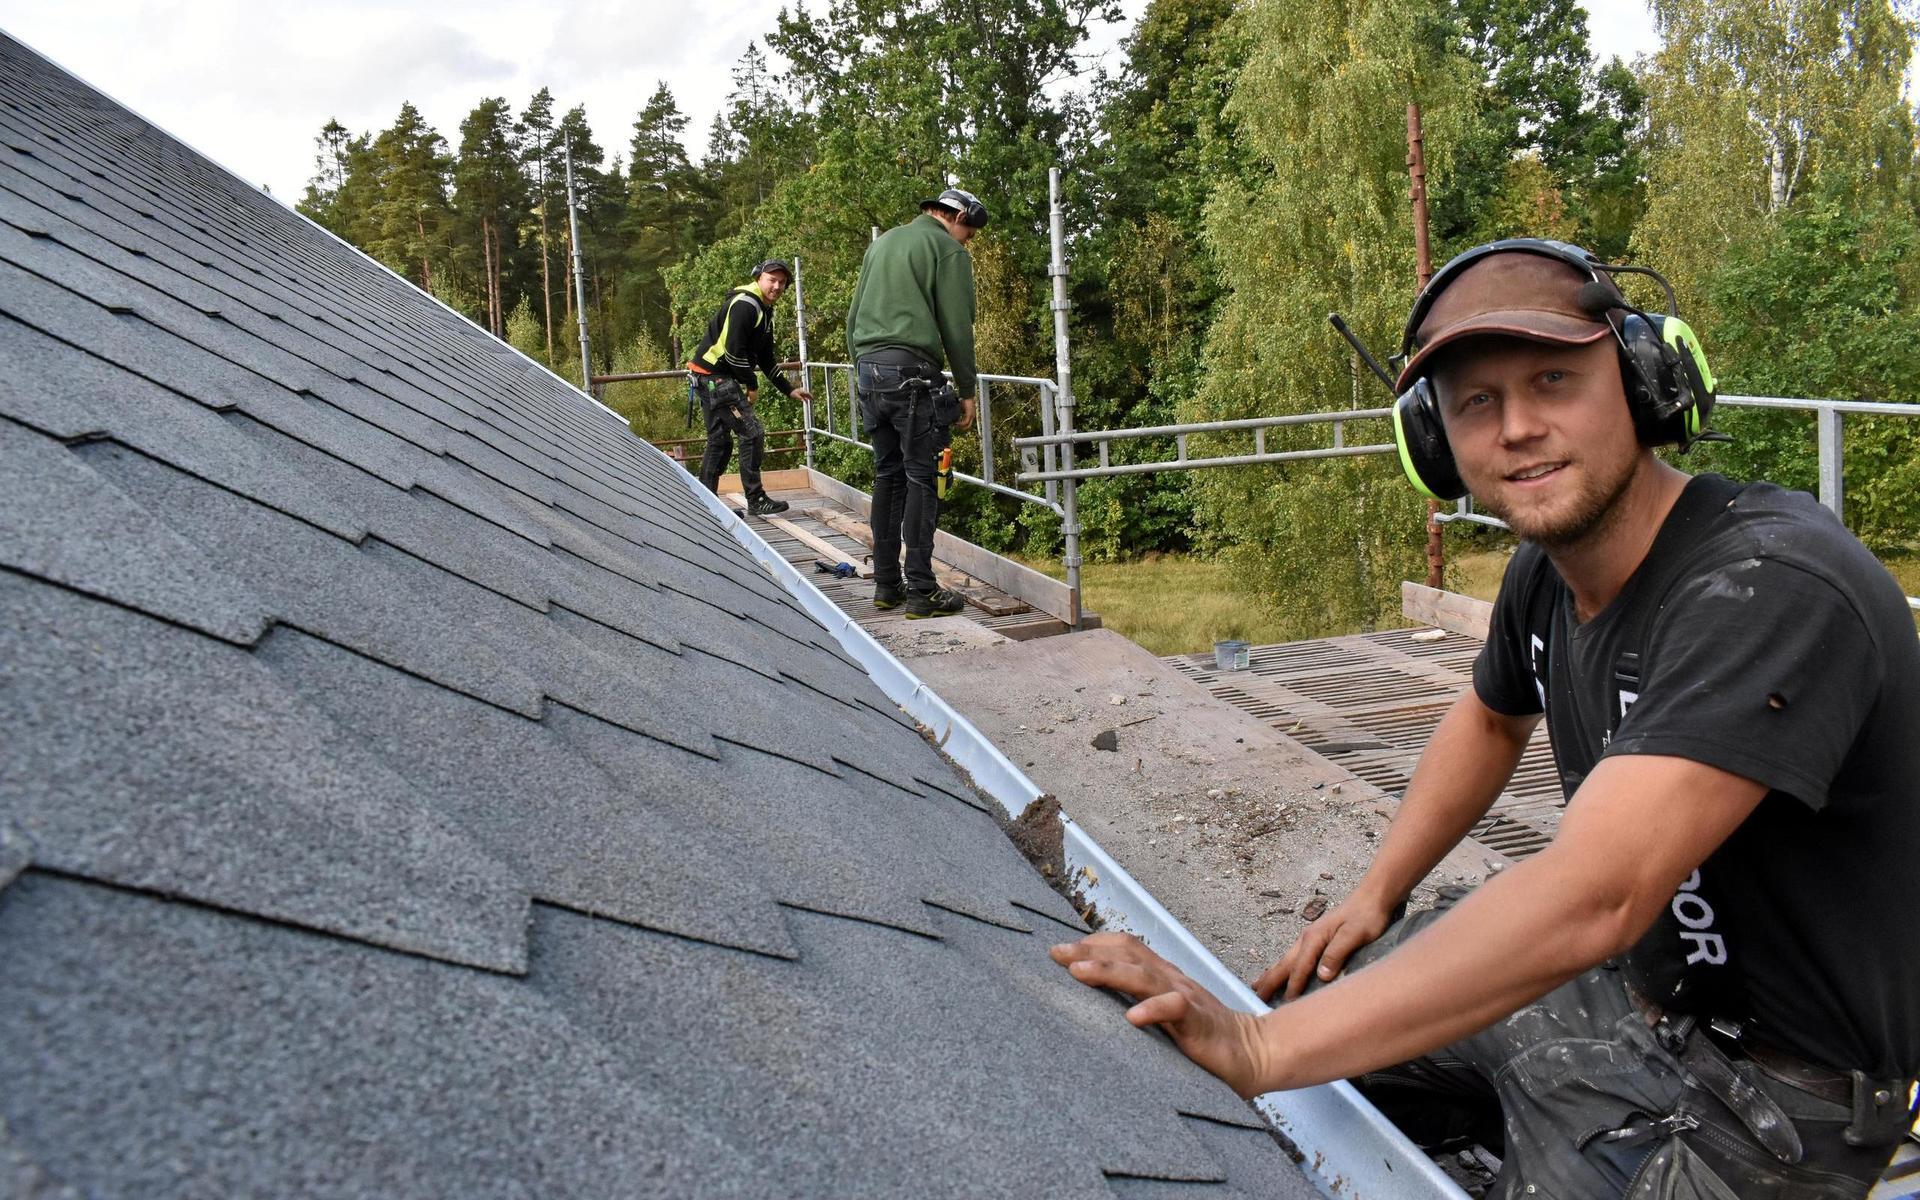 Slätteryds skola håller på att rustas upp. Snickaren Andreas Bernhardt granskar det nylagda pappklädseln till taket och medan Niels Suhr och Noel Palmqvist börjar montera ned ställningarna mot taket.